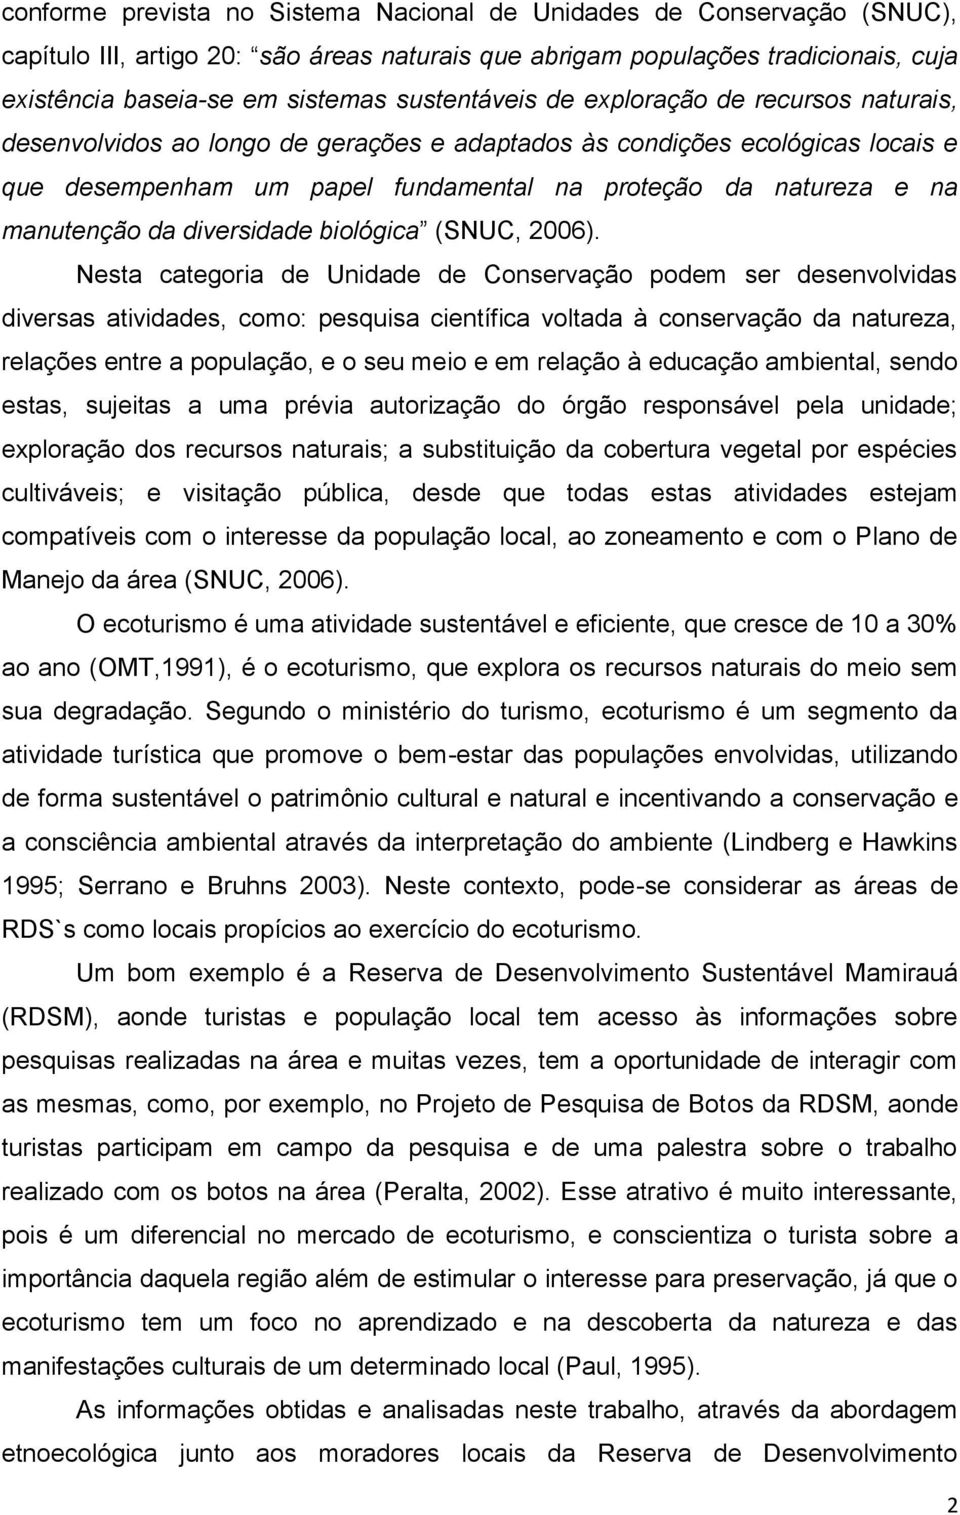 manutenção da diversidade biológica (SNUC, 2006).